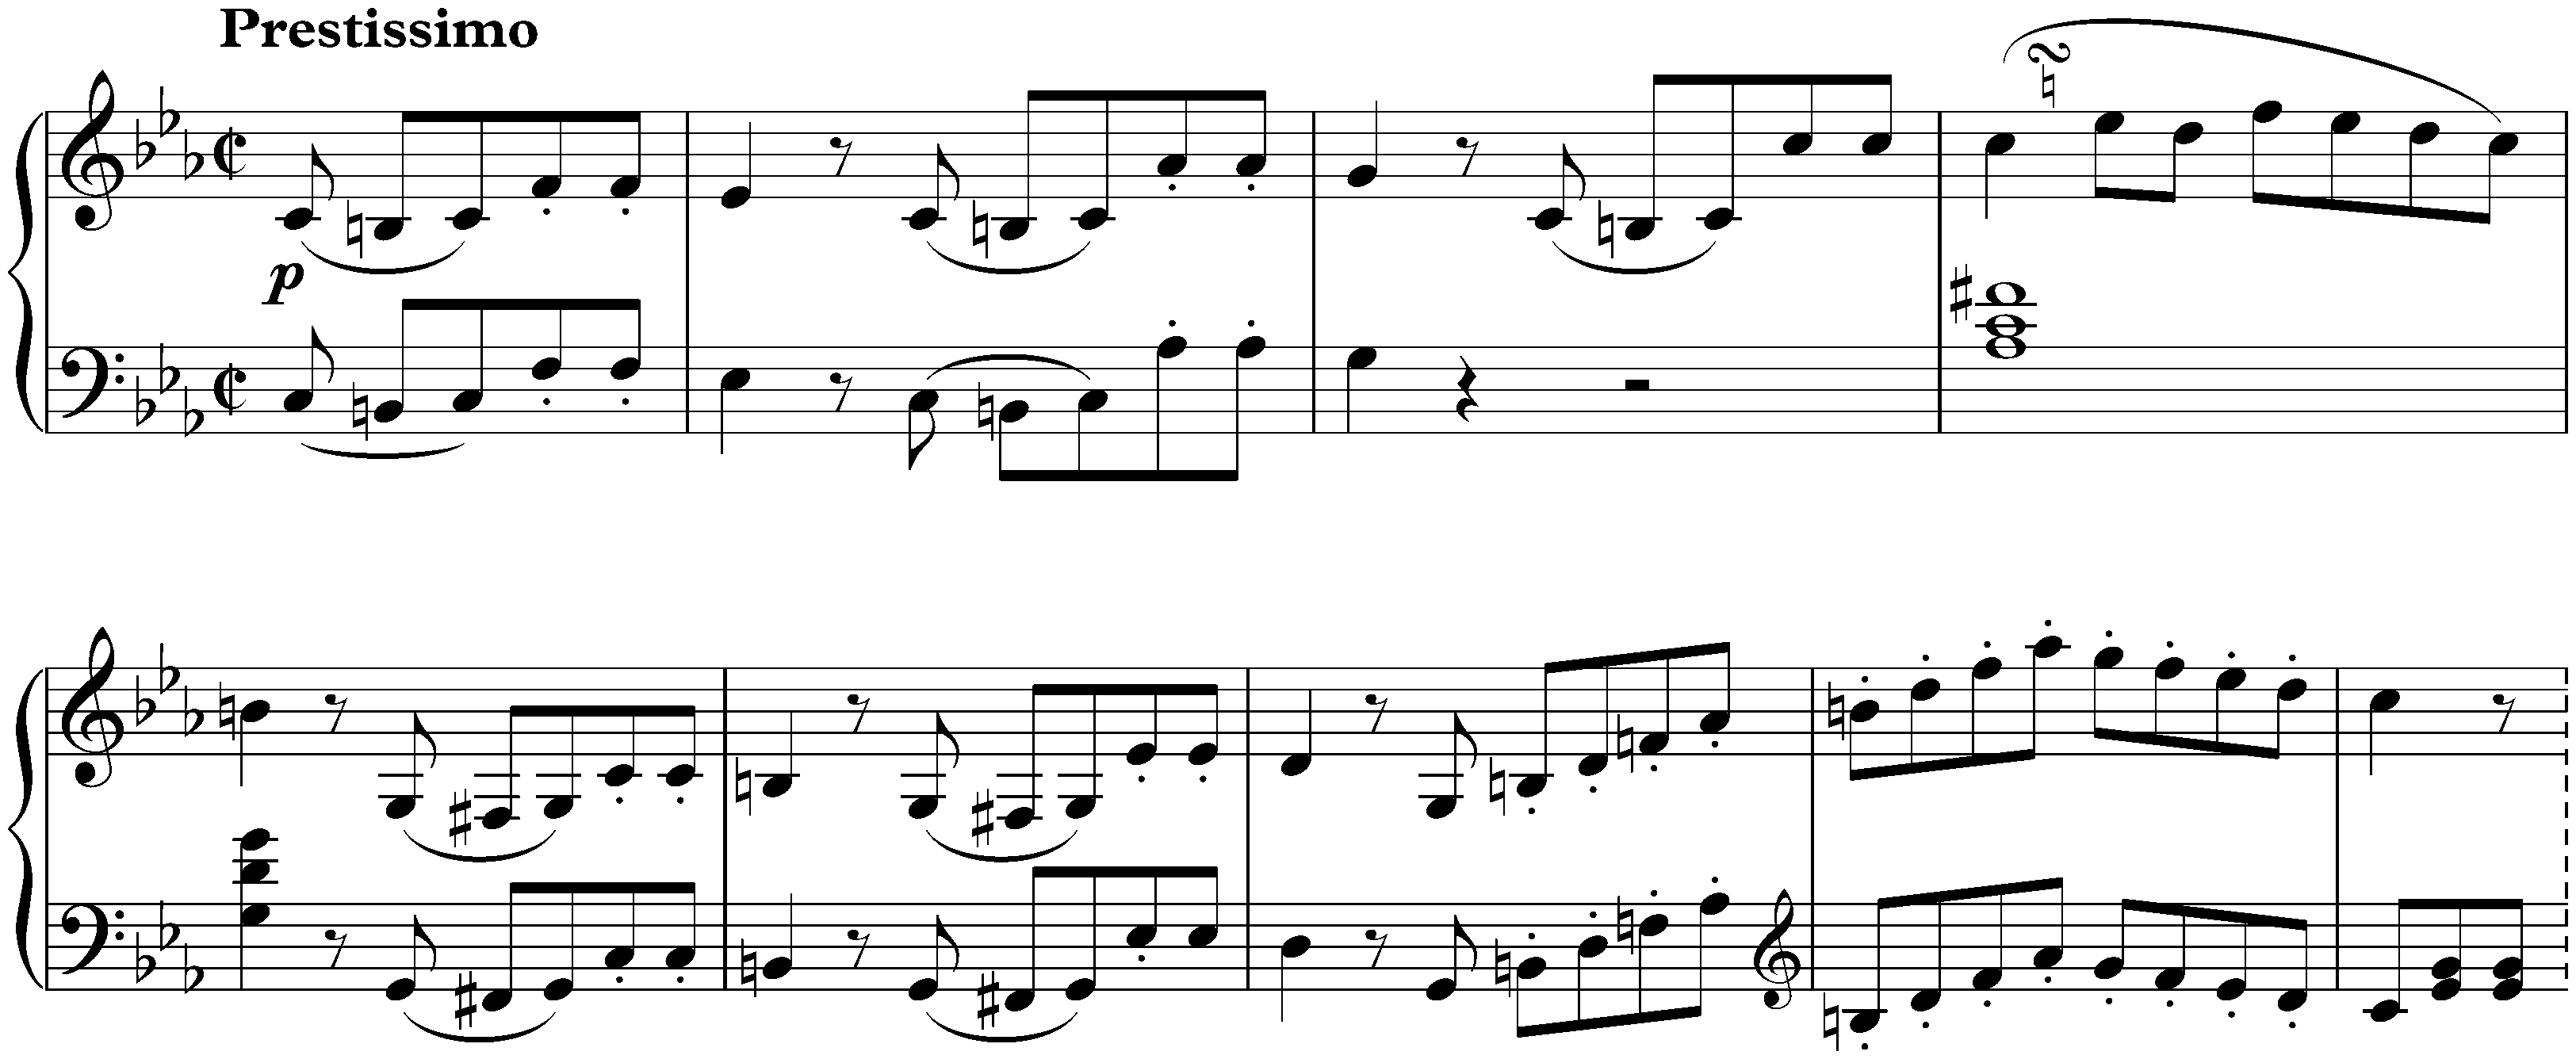 Sonata no. 5 in C minor, op. 10 no. 1; 3. Finale: Prestissimo